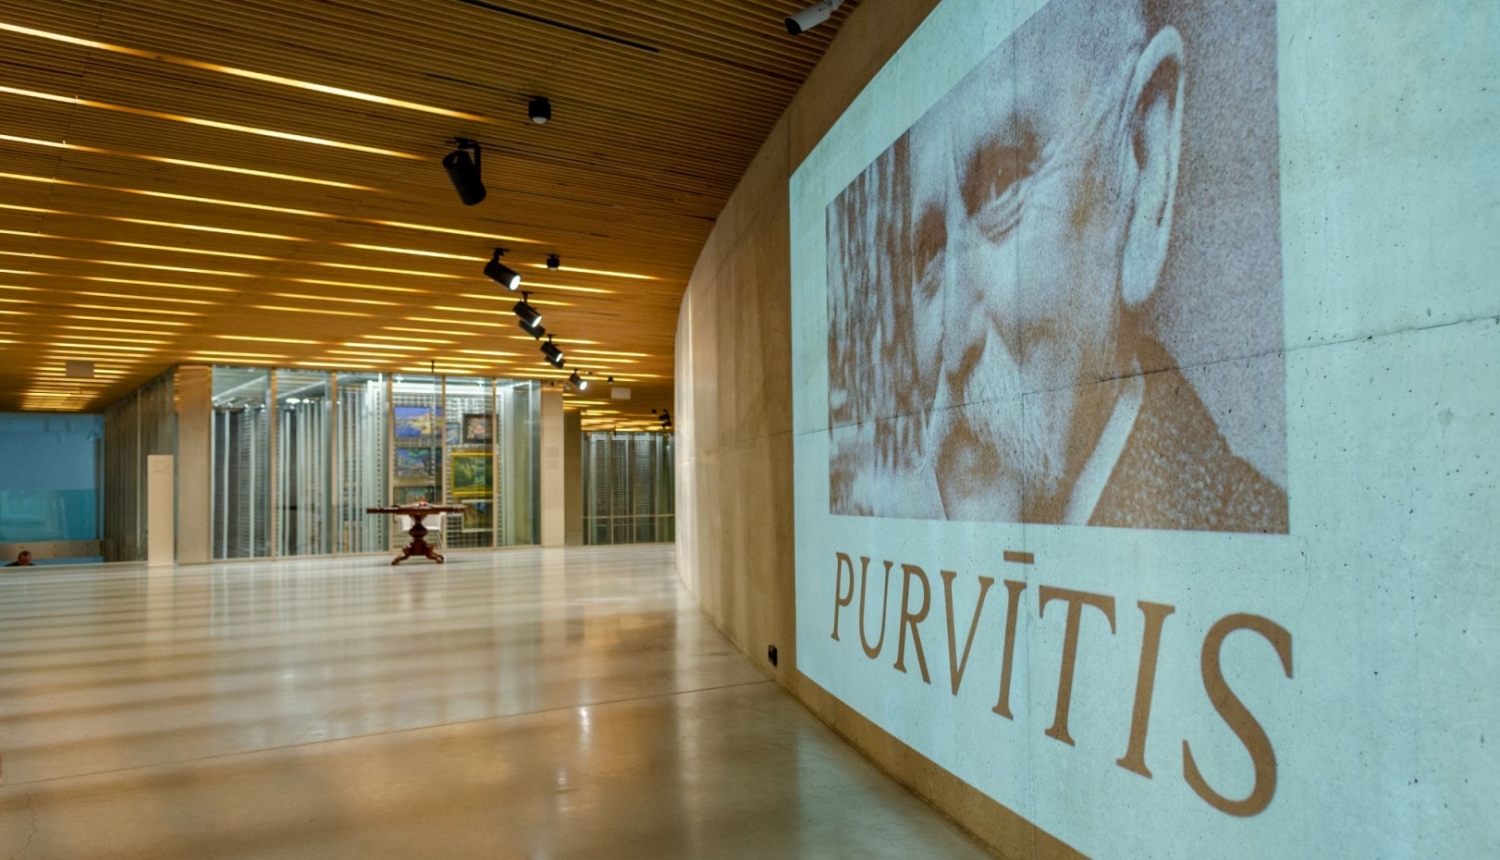 Izstādes “PURVĪTIS” ekspozīcija Latvijas Nacionālajā mākslas muzejā. Rīga, 2022. Foto: Valters Lācis